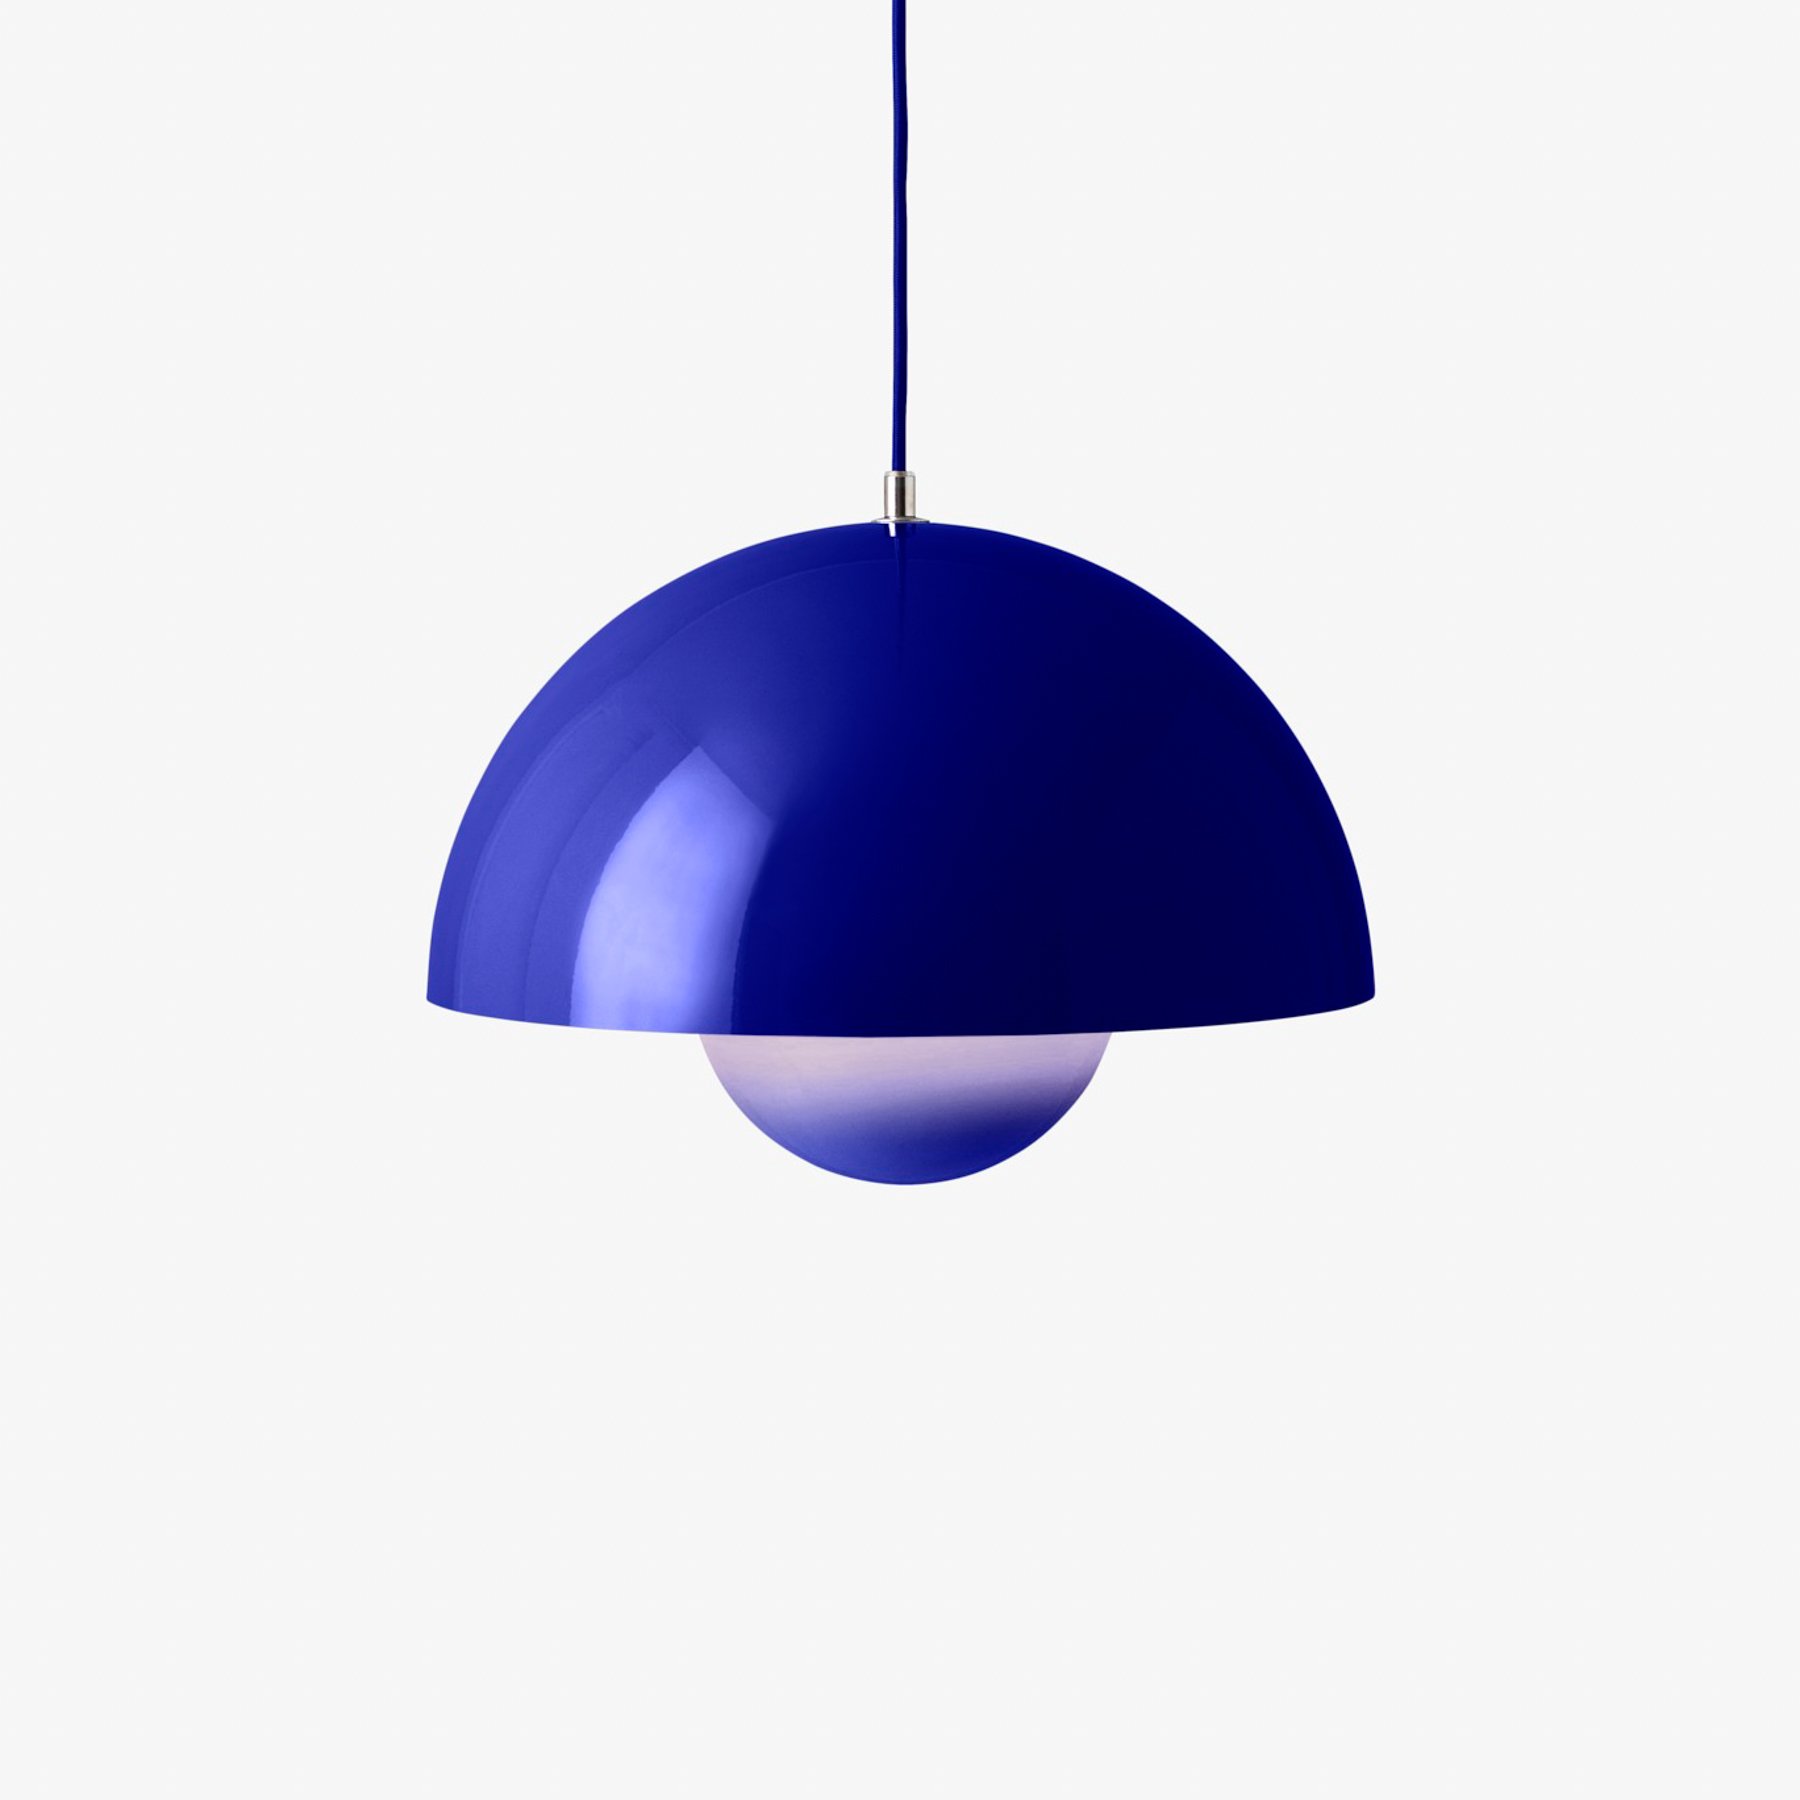 &Tradycyjna lampa wisząca Flowerpot VP7, Ø 37 cm, kobaltowy niebieski